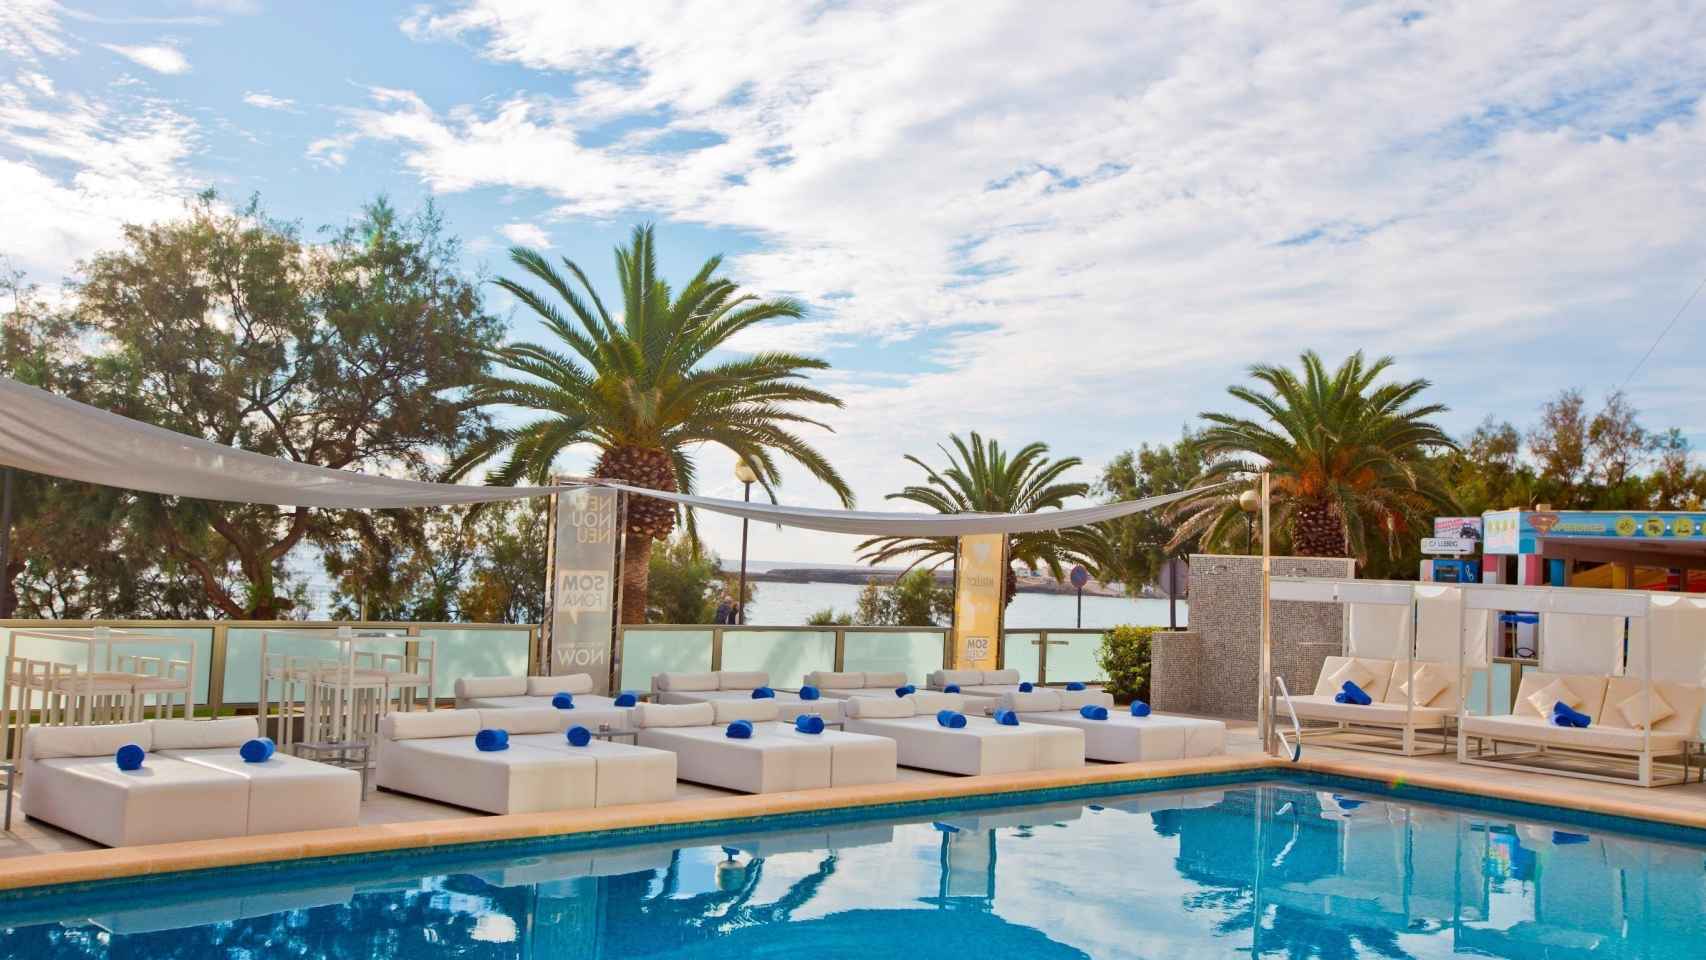 Hotel en Mallorca que adquirió MIM Hotels en 2019